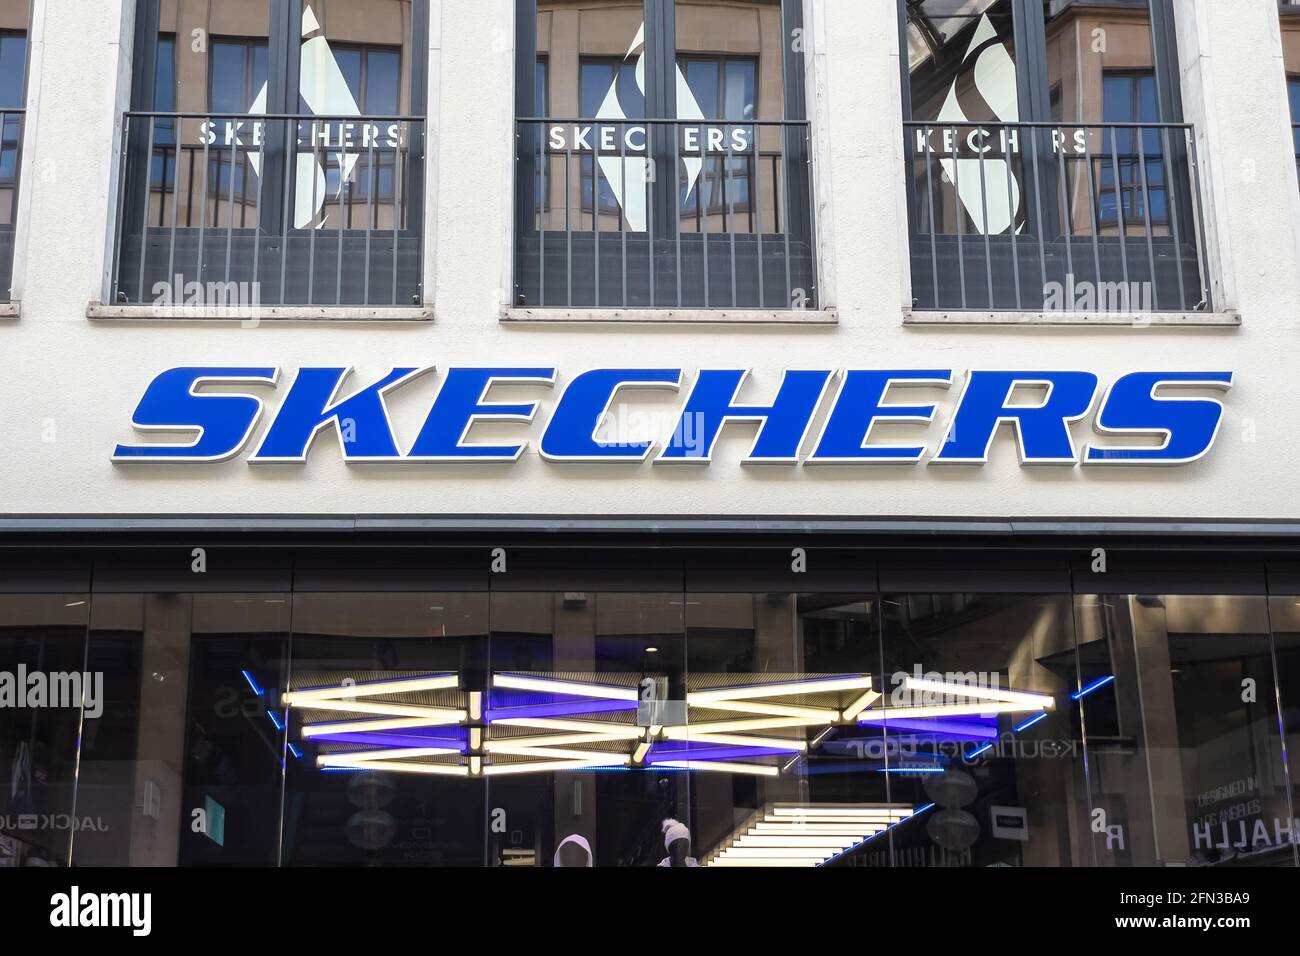 Vooruitgang Naar behoren begroting Skechers shoe store sign in Munich's town center Stock Photo - Alamy